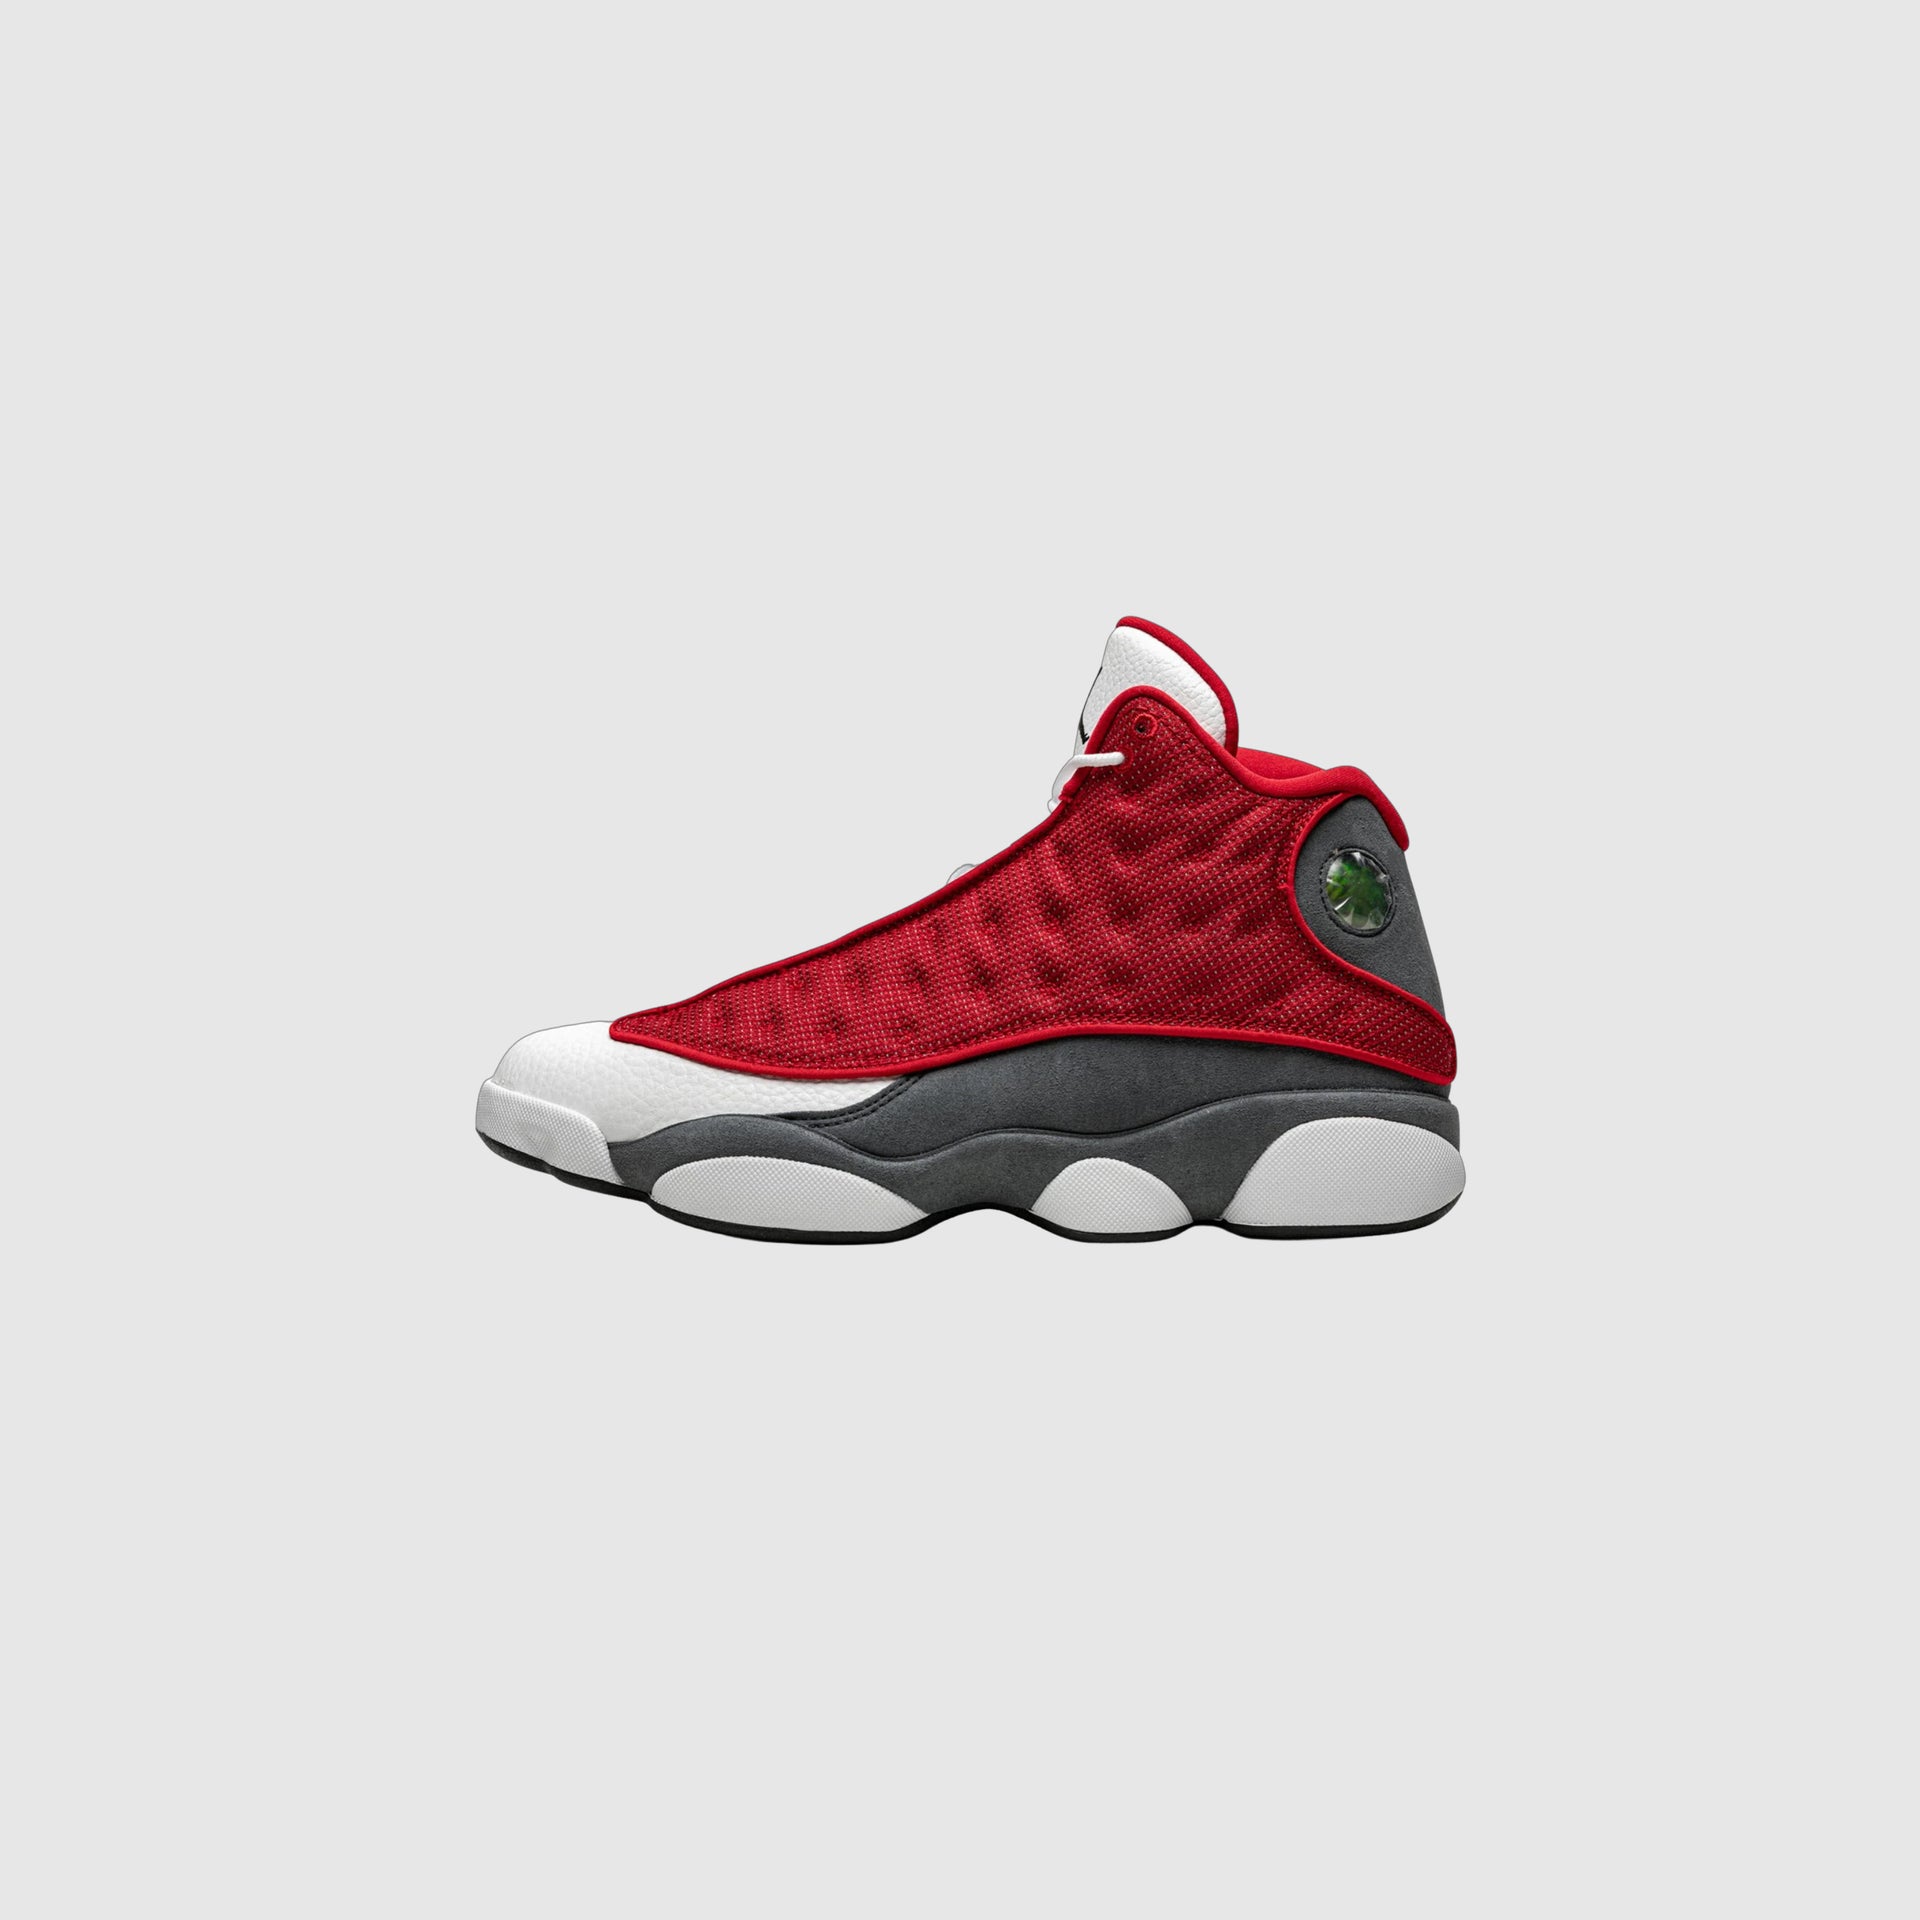 Air Jordan 13 Retro “Red Flint”